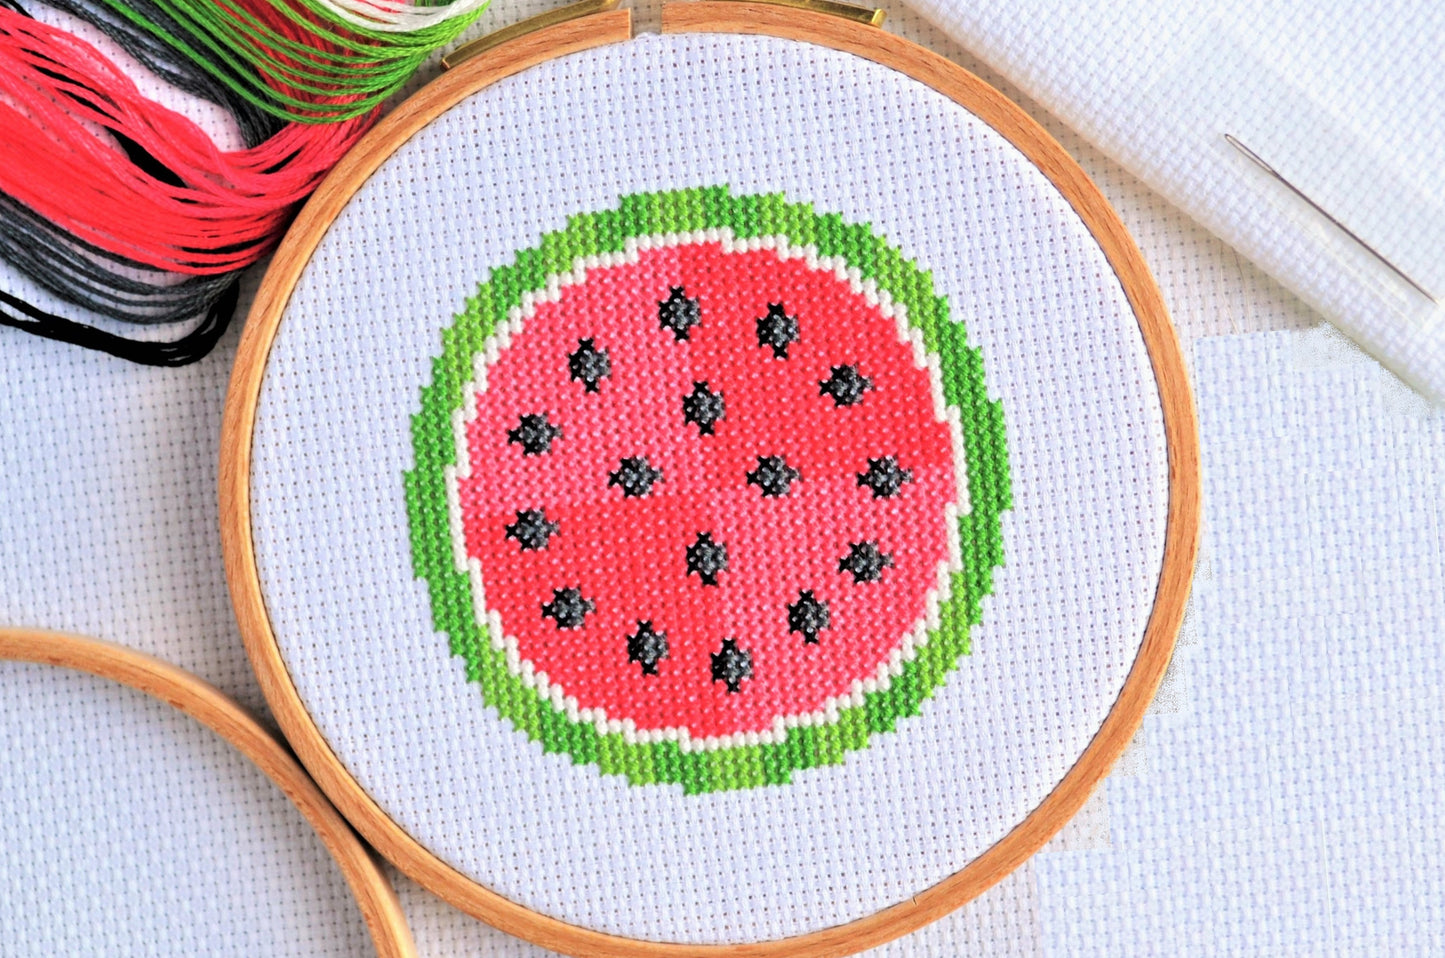 Mini Watermelon Cross Stitch Kit